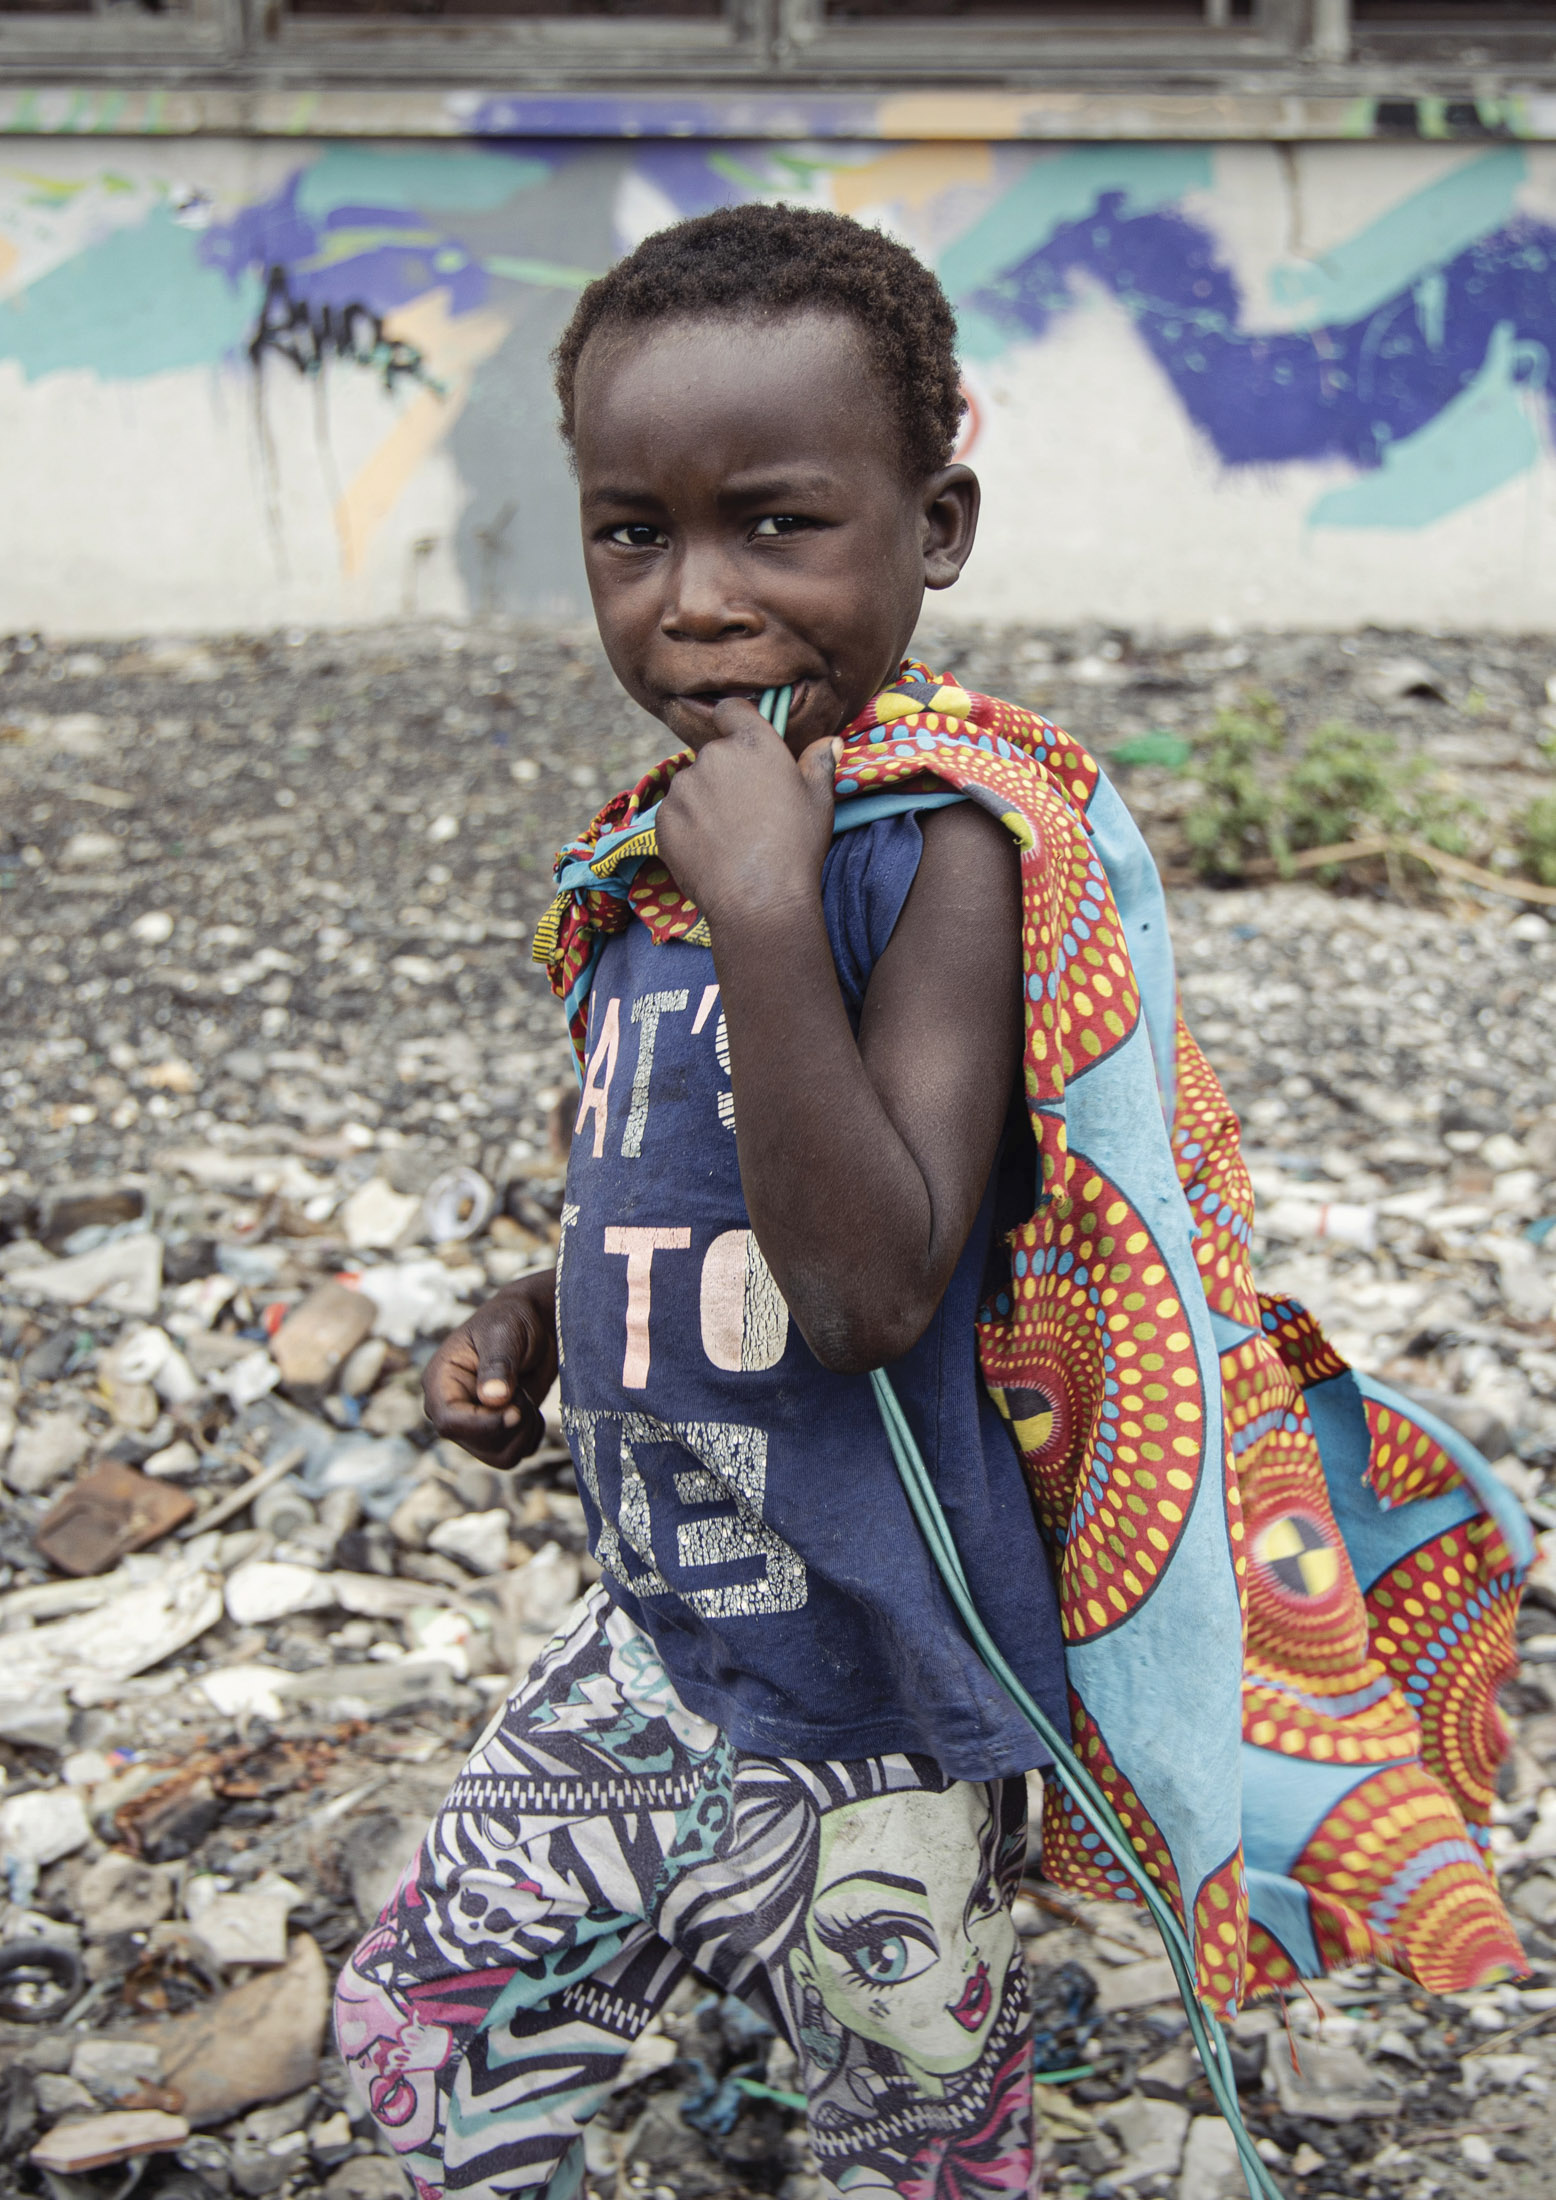 Ein kleiner Junge steht lächelnd auf einem mit Abfall übersäten Boden und trägt ein bunt bedrucktes Tuch über einem T-Shirt und einer gemusterten Hose. Im Hintergrund eine Graffitiwand. © Fotografie Tomas Rodriguez